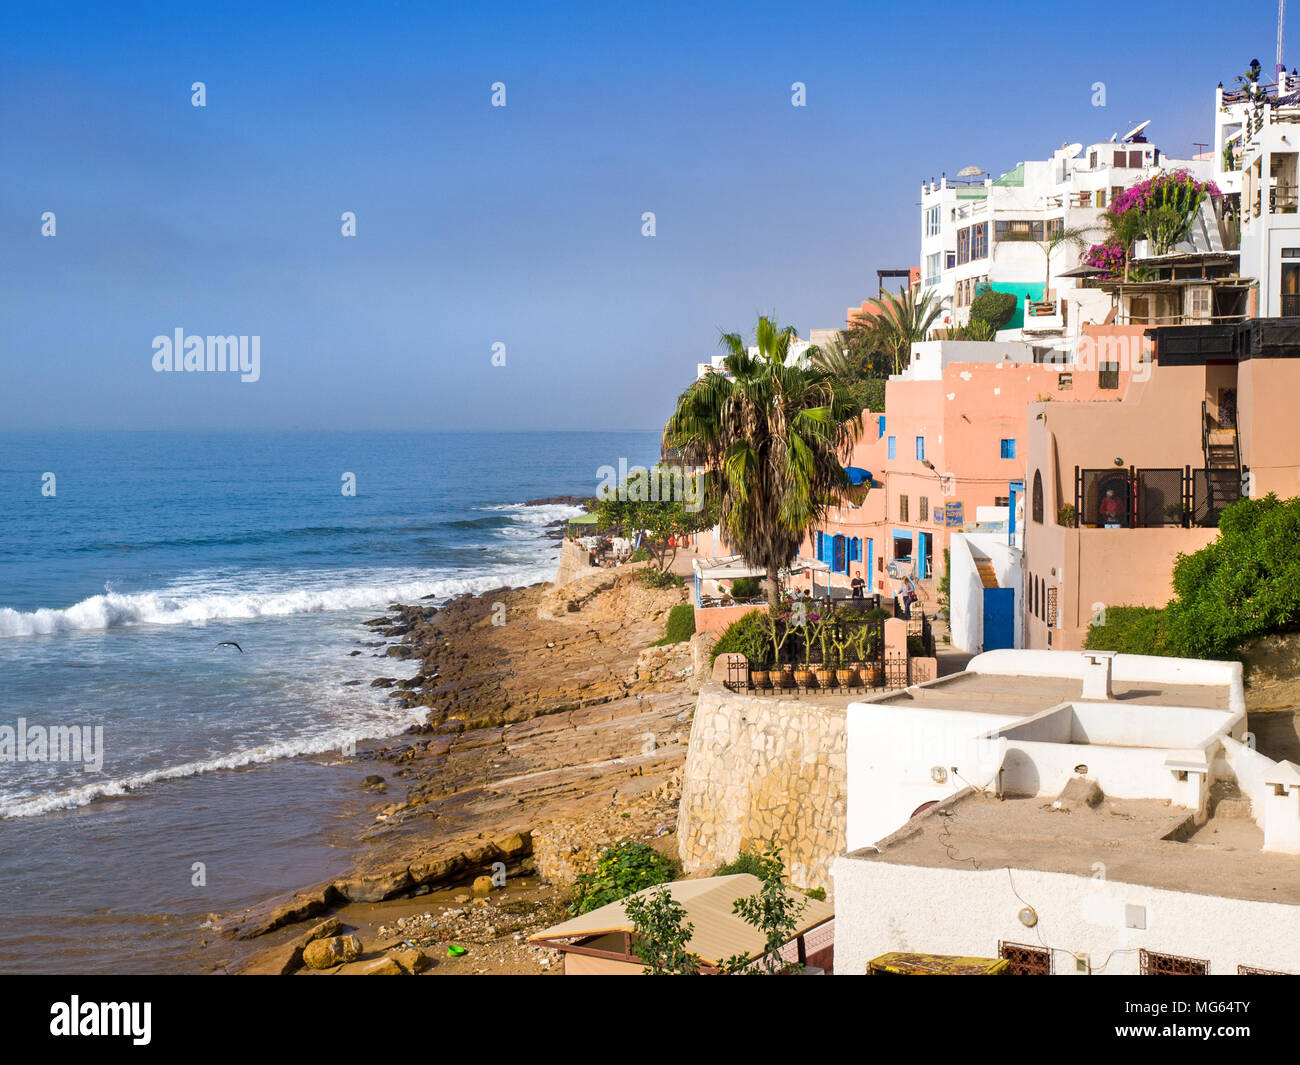 La città costiera di Taghzoute / Taghzout, una popolare destinazione di surf, Marocco Foto Stock